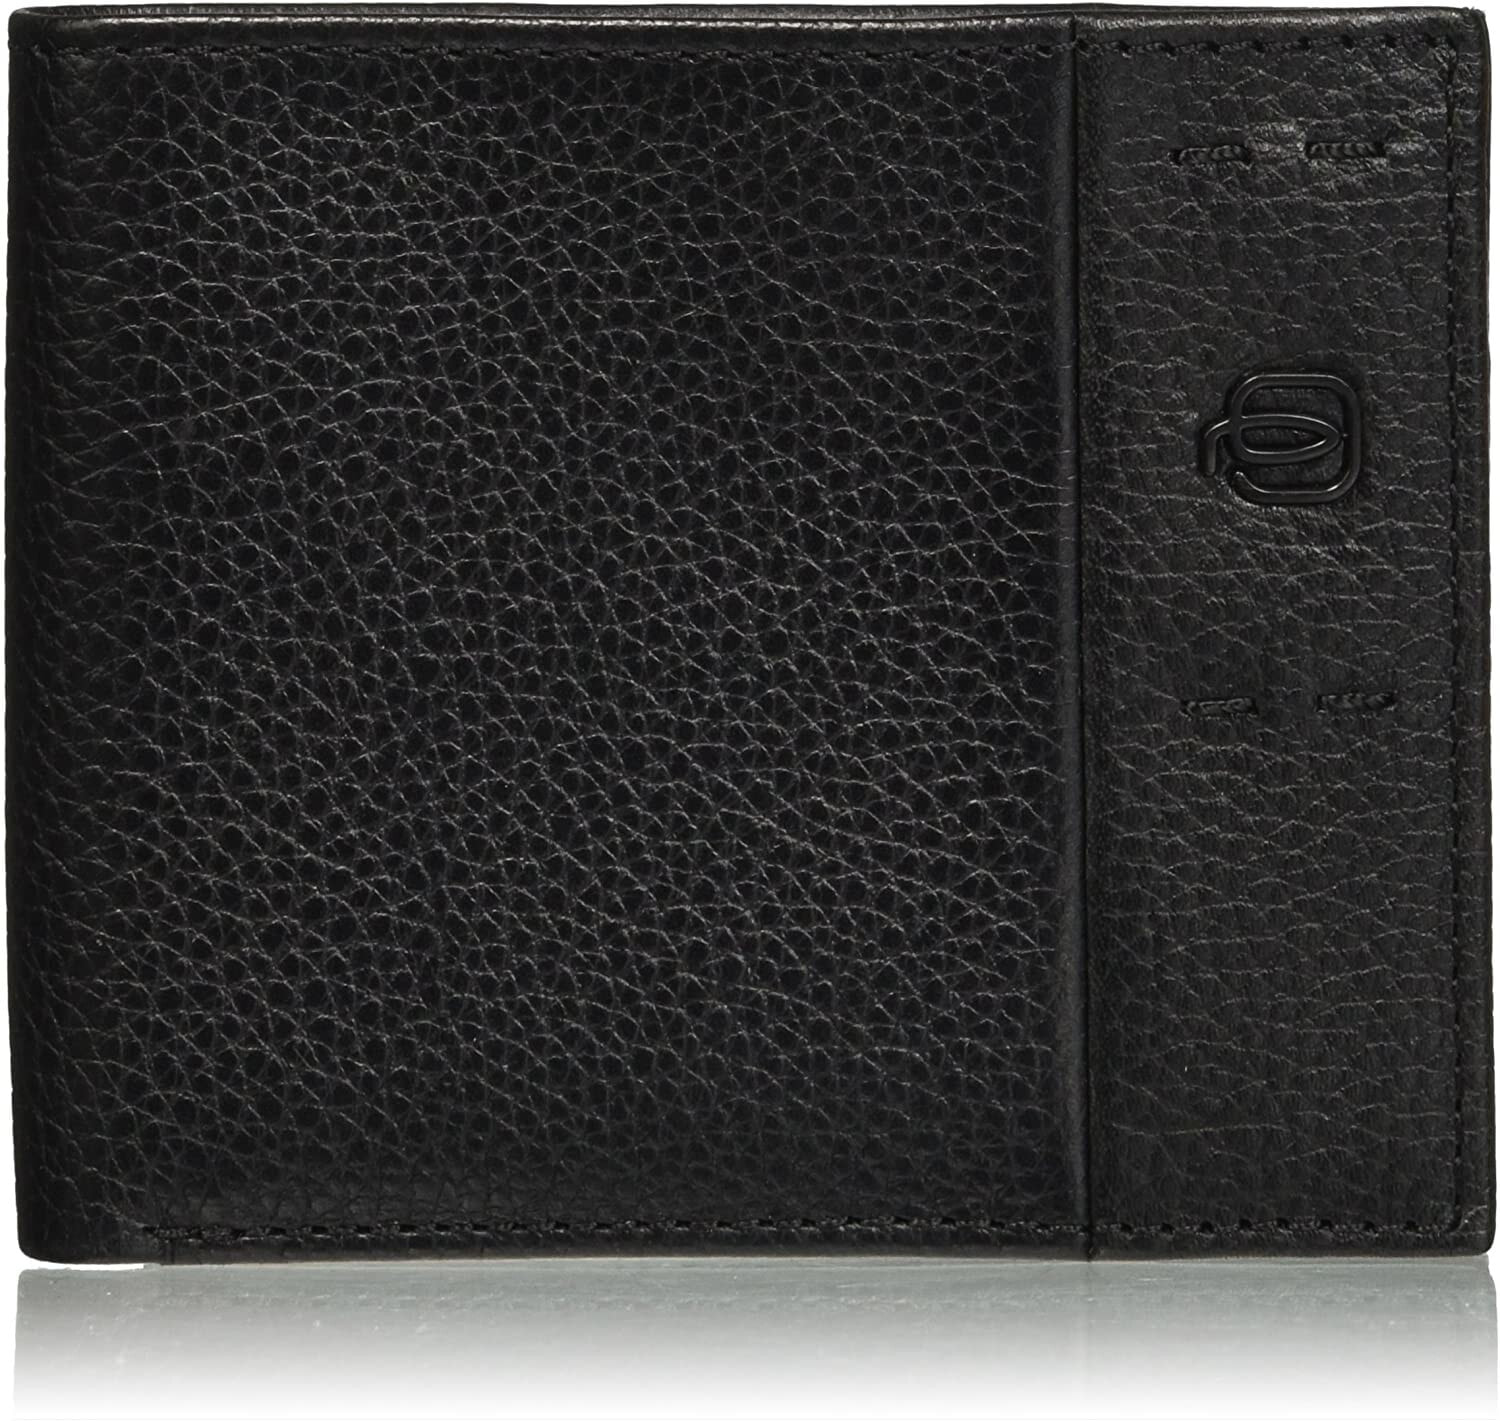 Мужское портмоне кожаное горизонтальное черное без застежки Piquadro Wallet